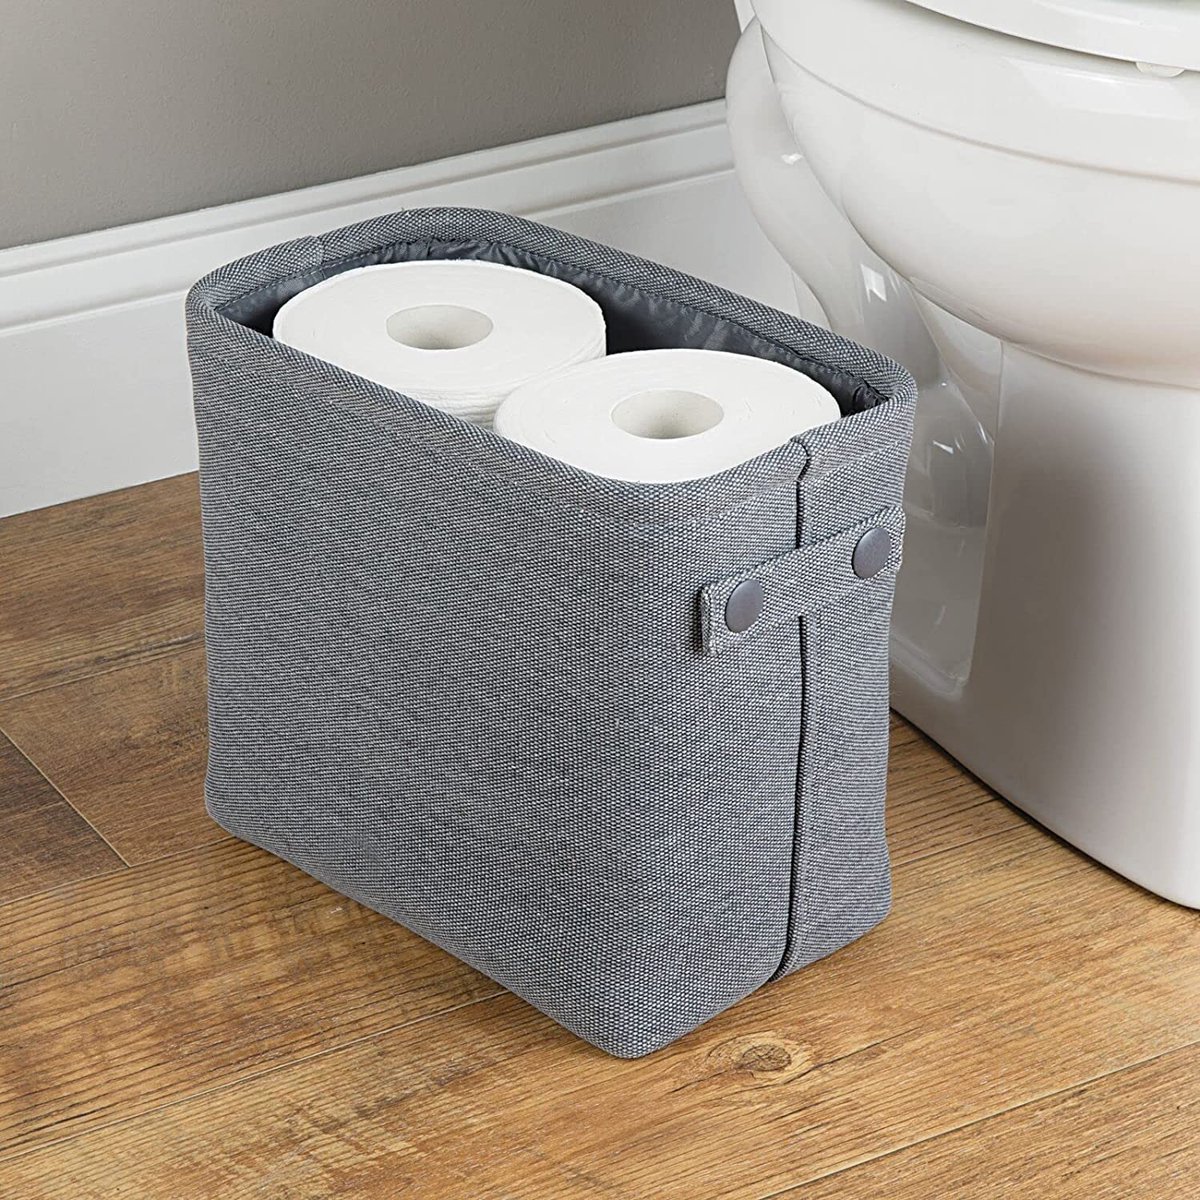 mDesign - Opbergbox - opbergmand - voor huishoudelijke en badkameraccessoires - perfect voor handdoeken - met geïntegreerde handvatten/stof - antraciet